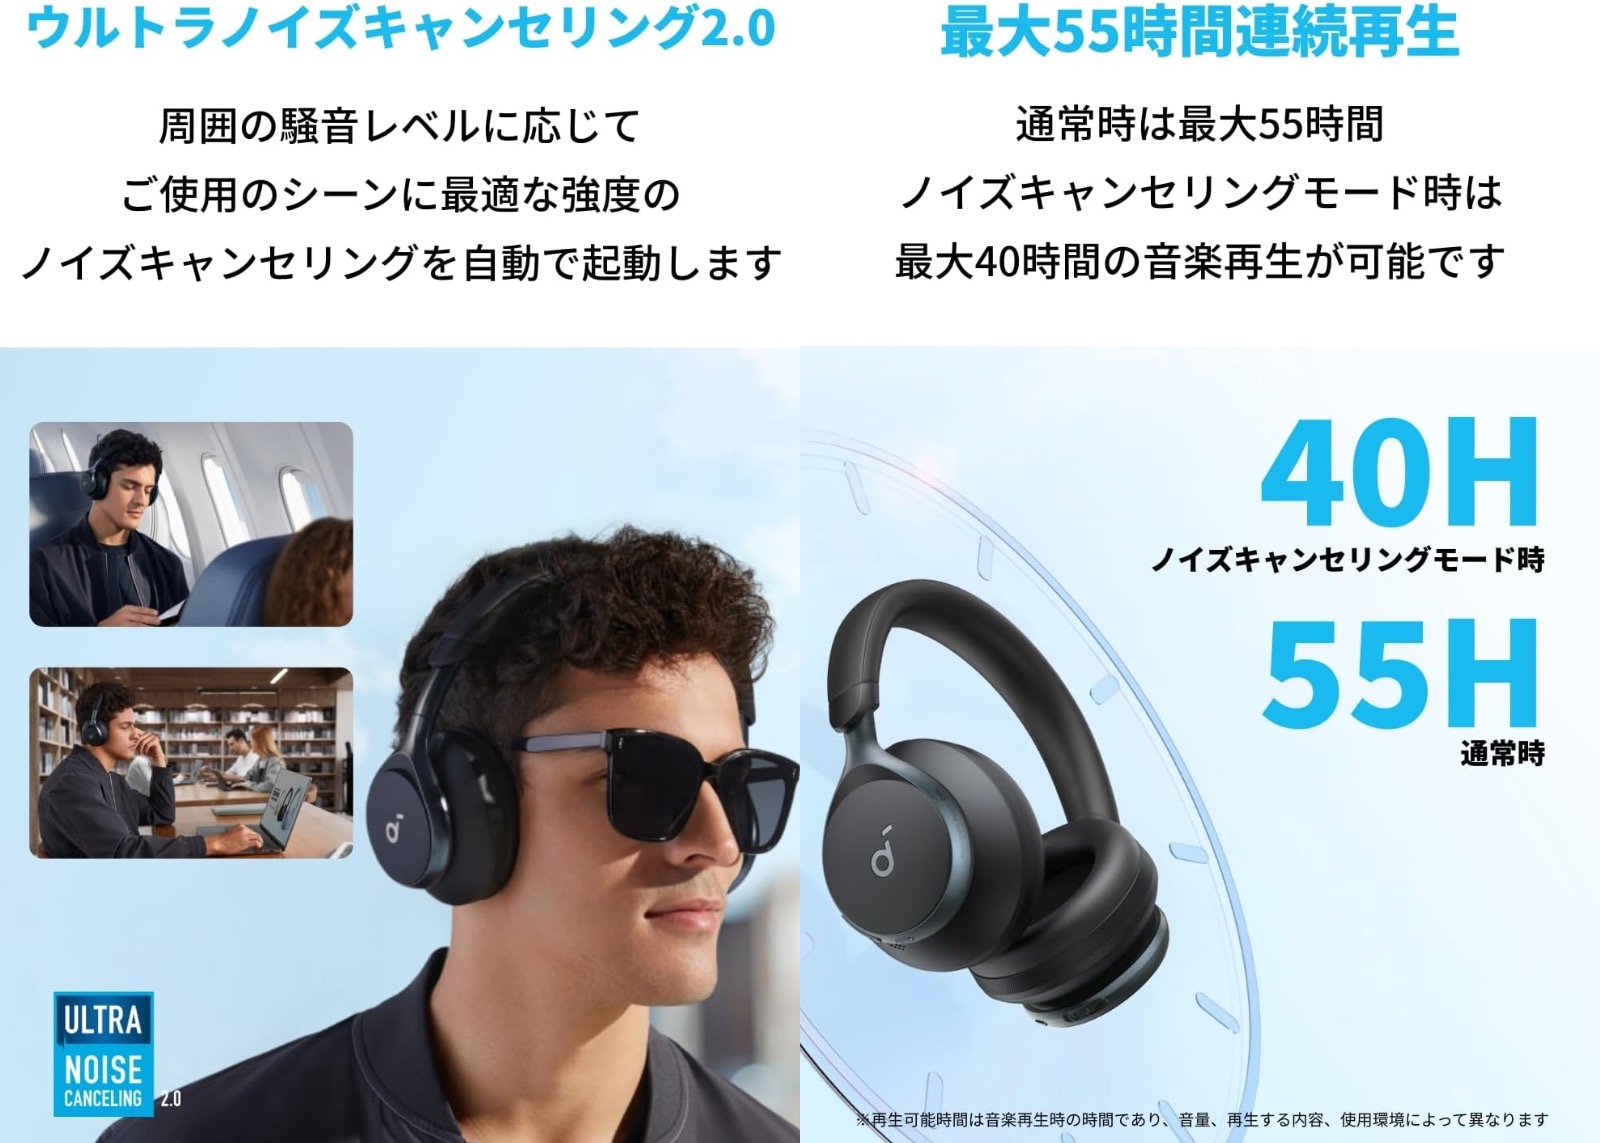 Anker-Headphones-specs-and-features.jpg